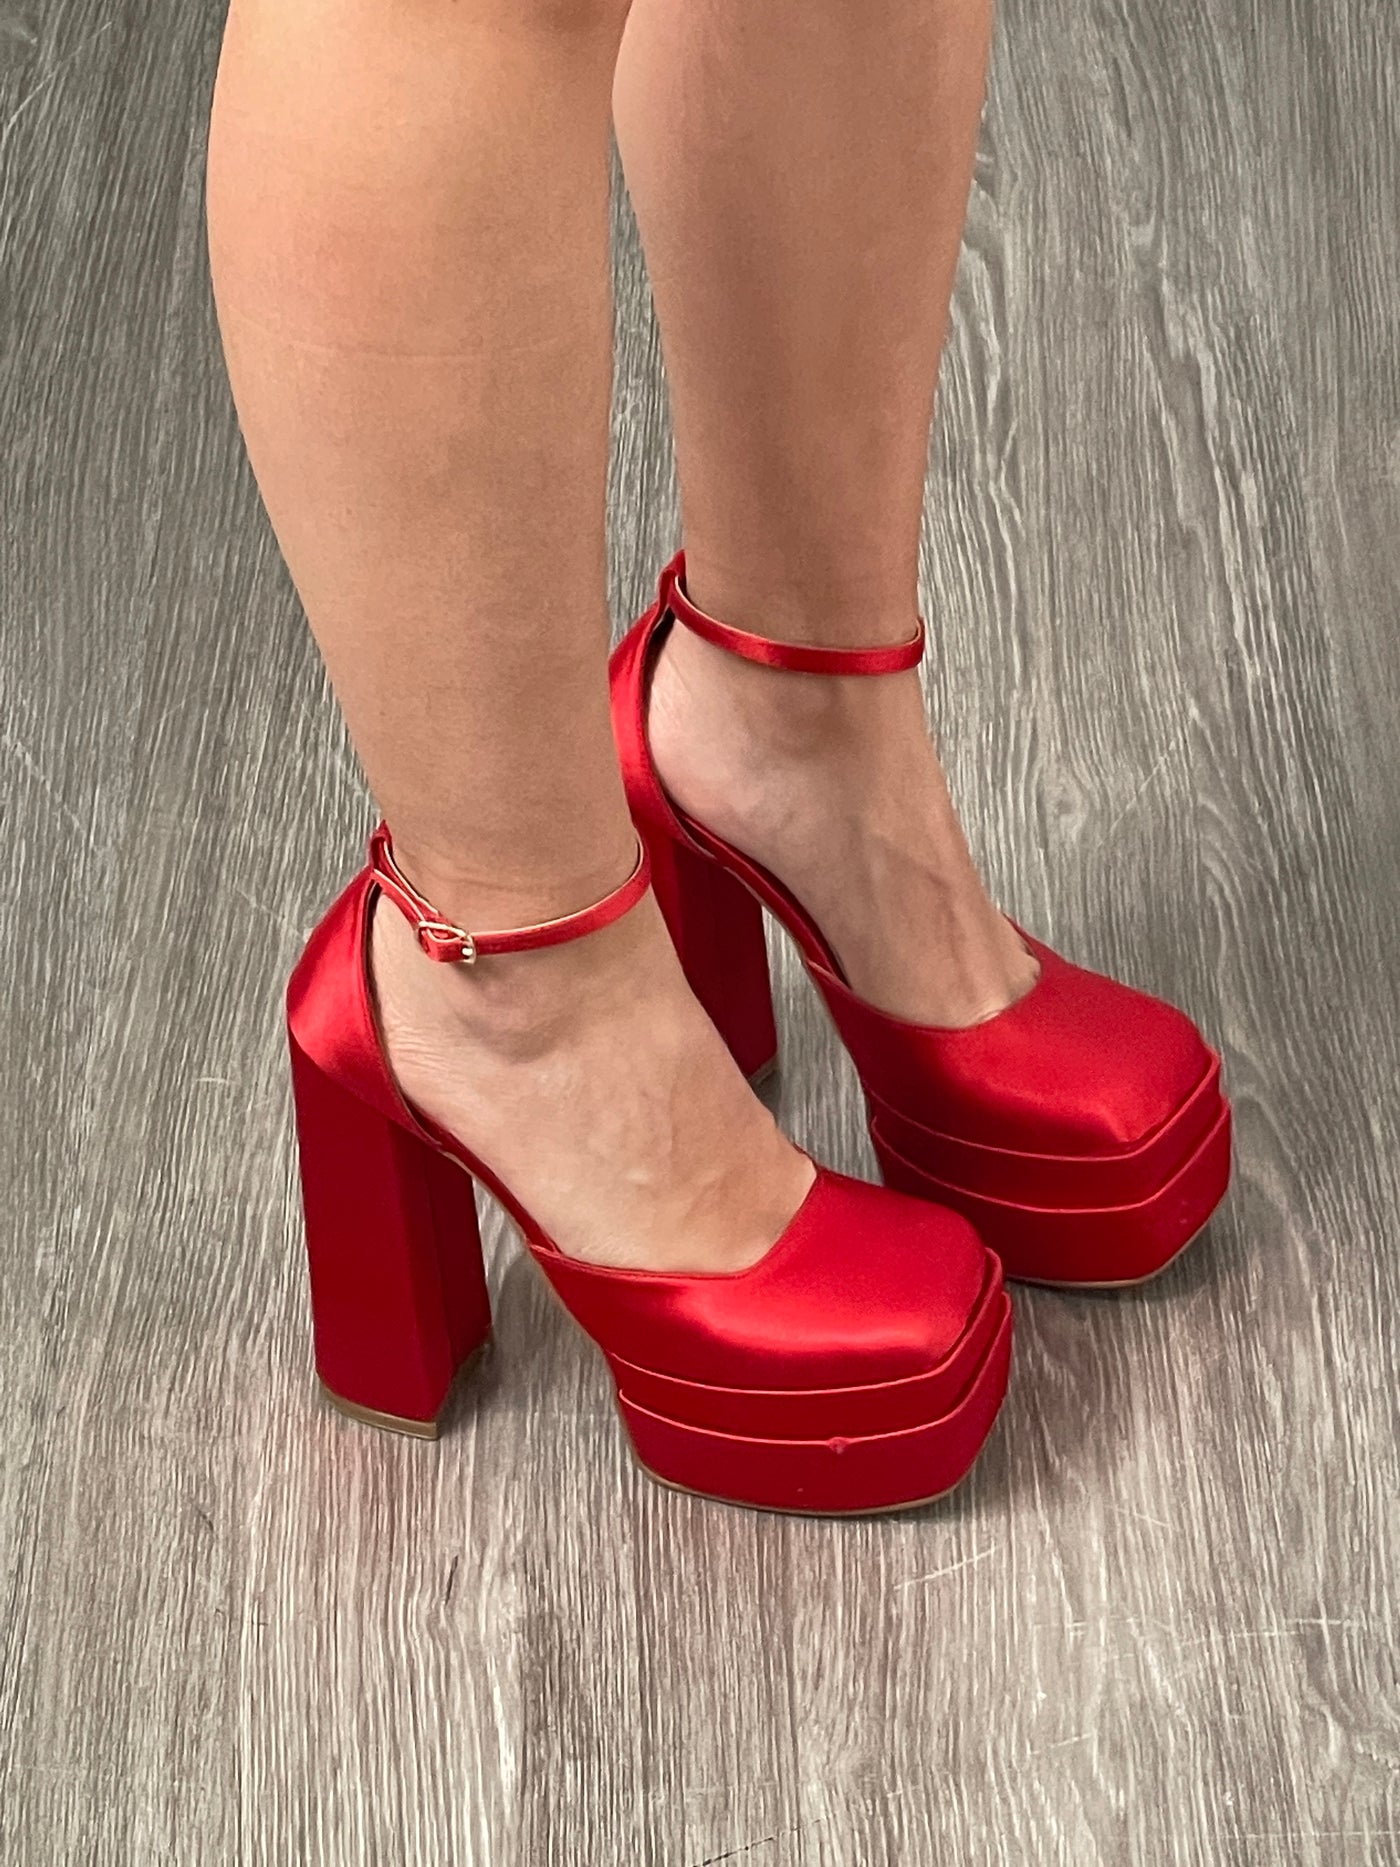 Zapatillas rojas de mujer  Comprar online 